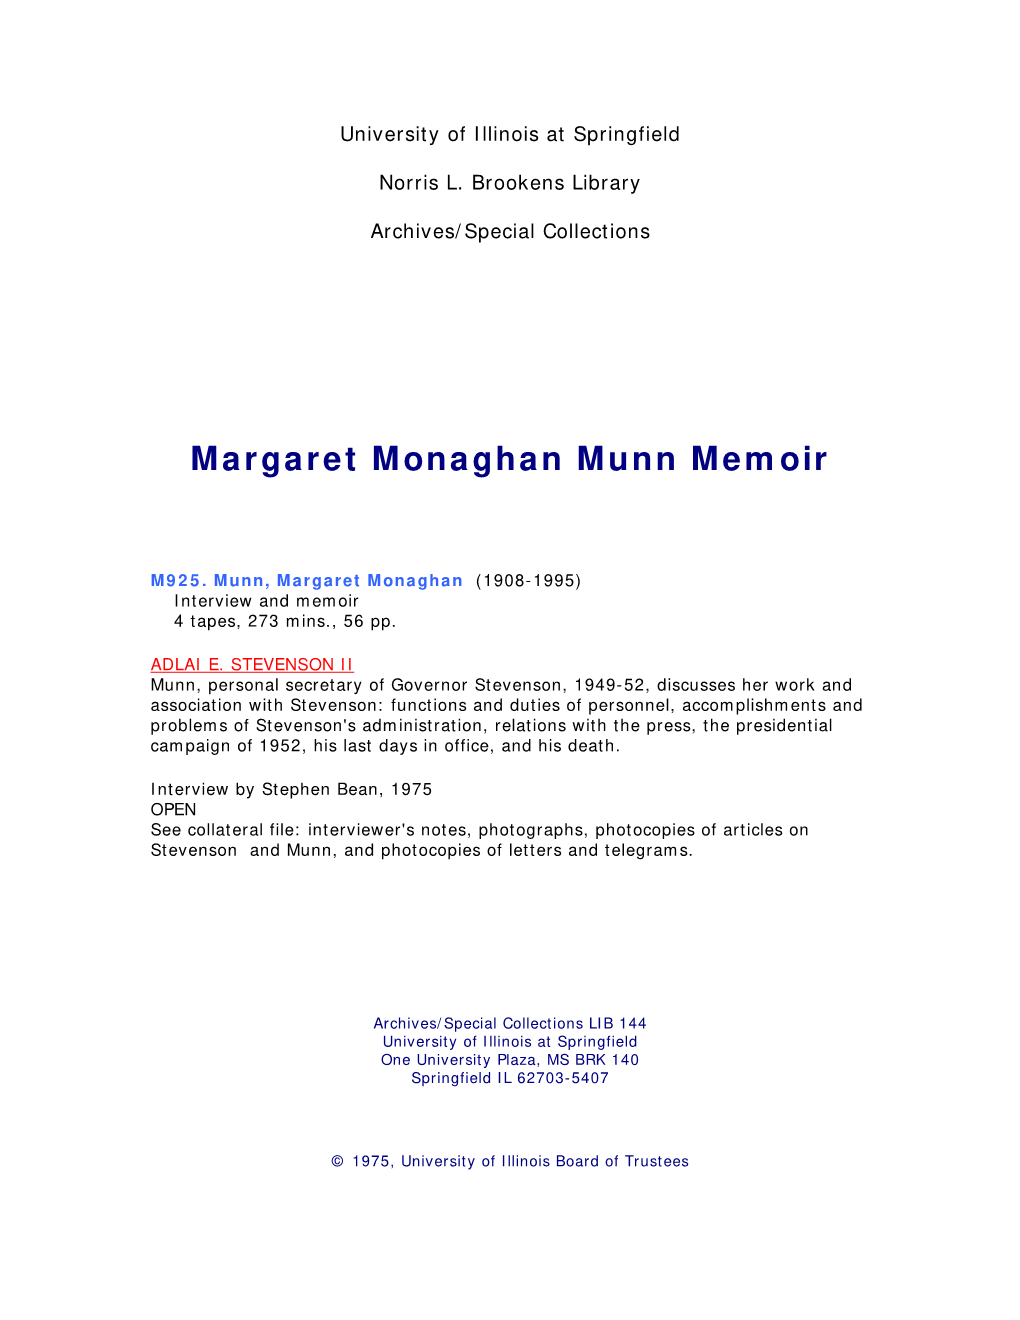 Margaret Monaghan Munn Memoir